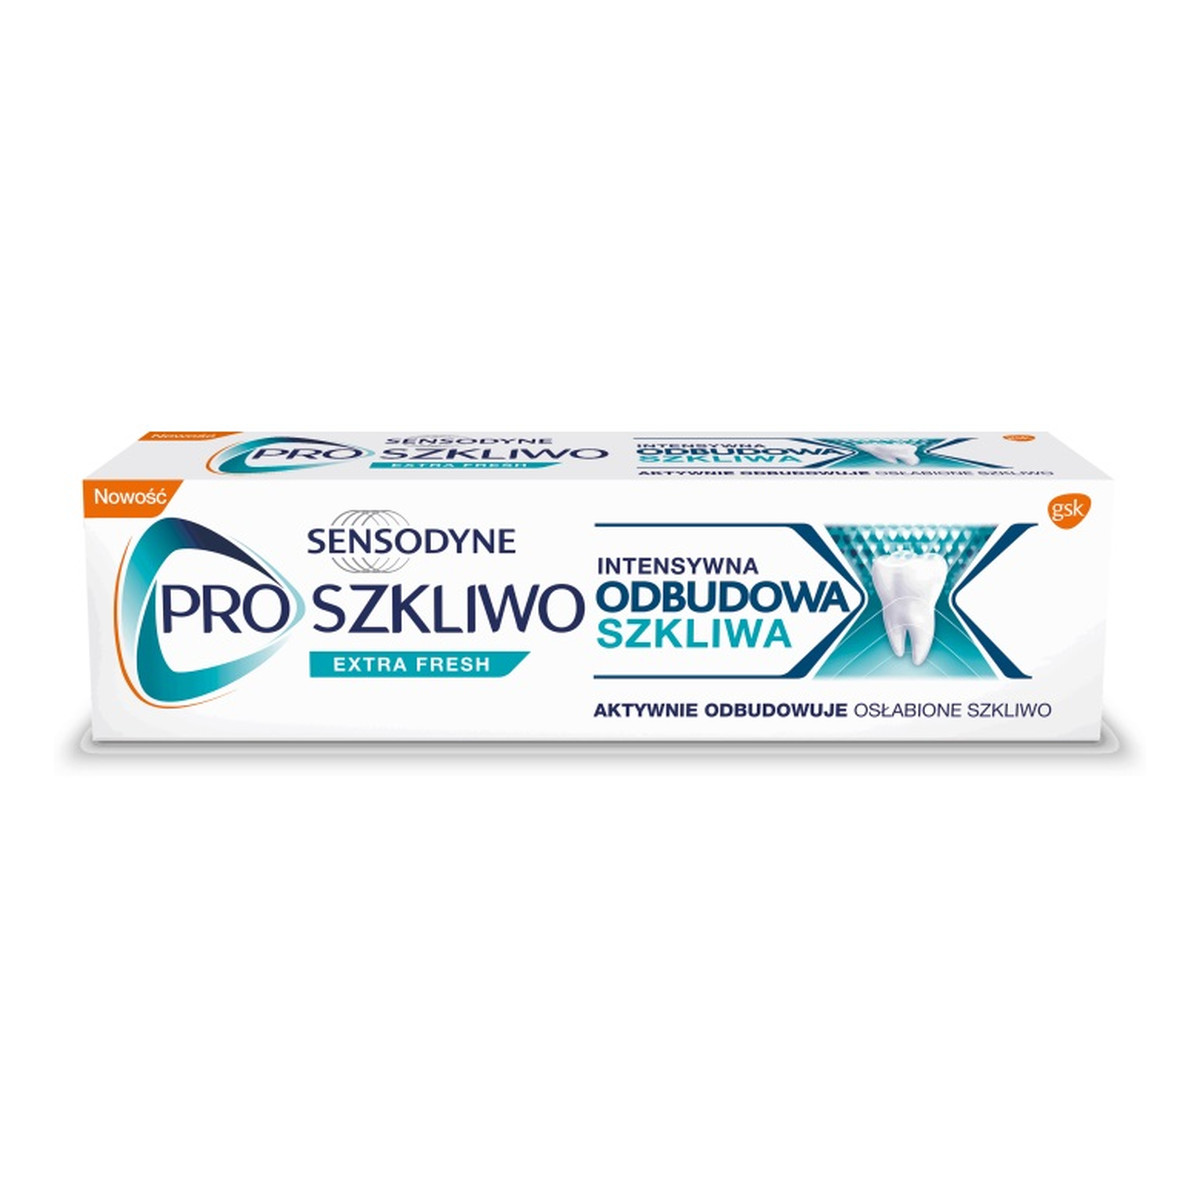 Sensodyne Proszkliwo intensywna odbudowa szkliwa pasta do zębów extra fresh 75ml